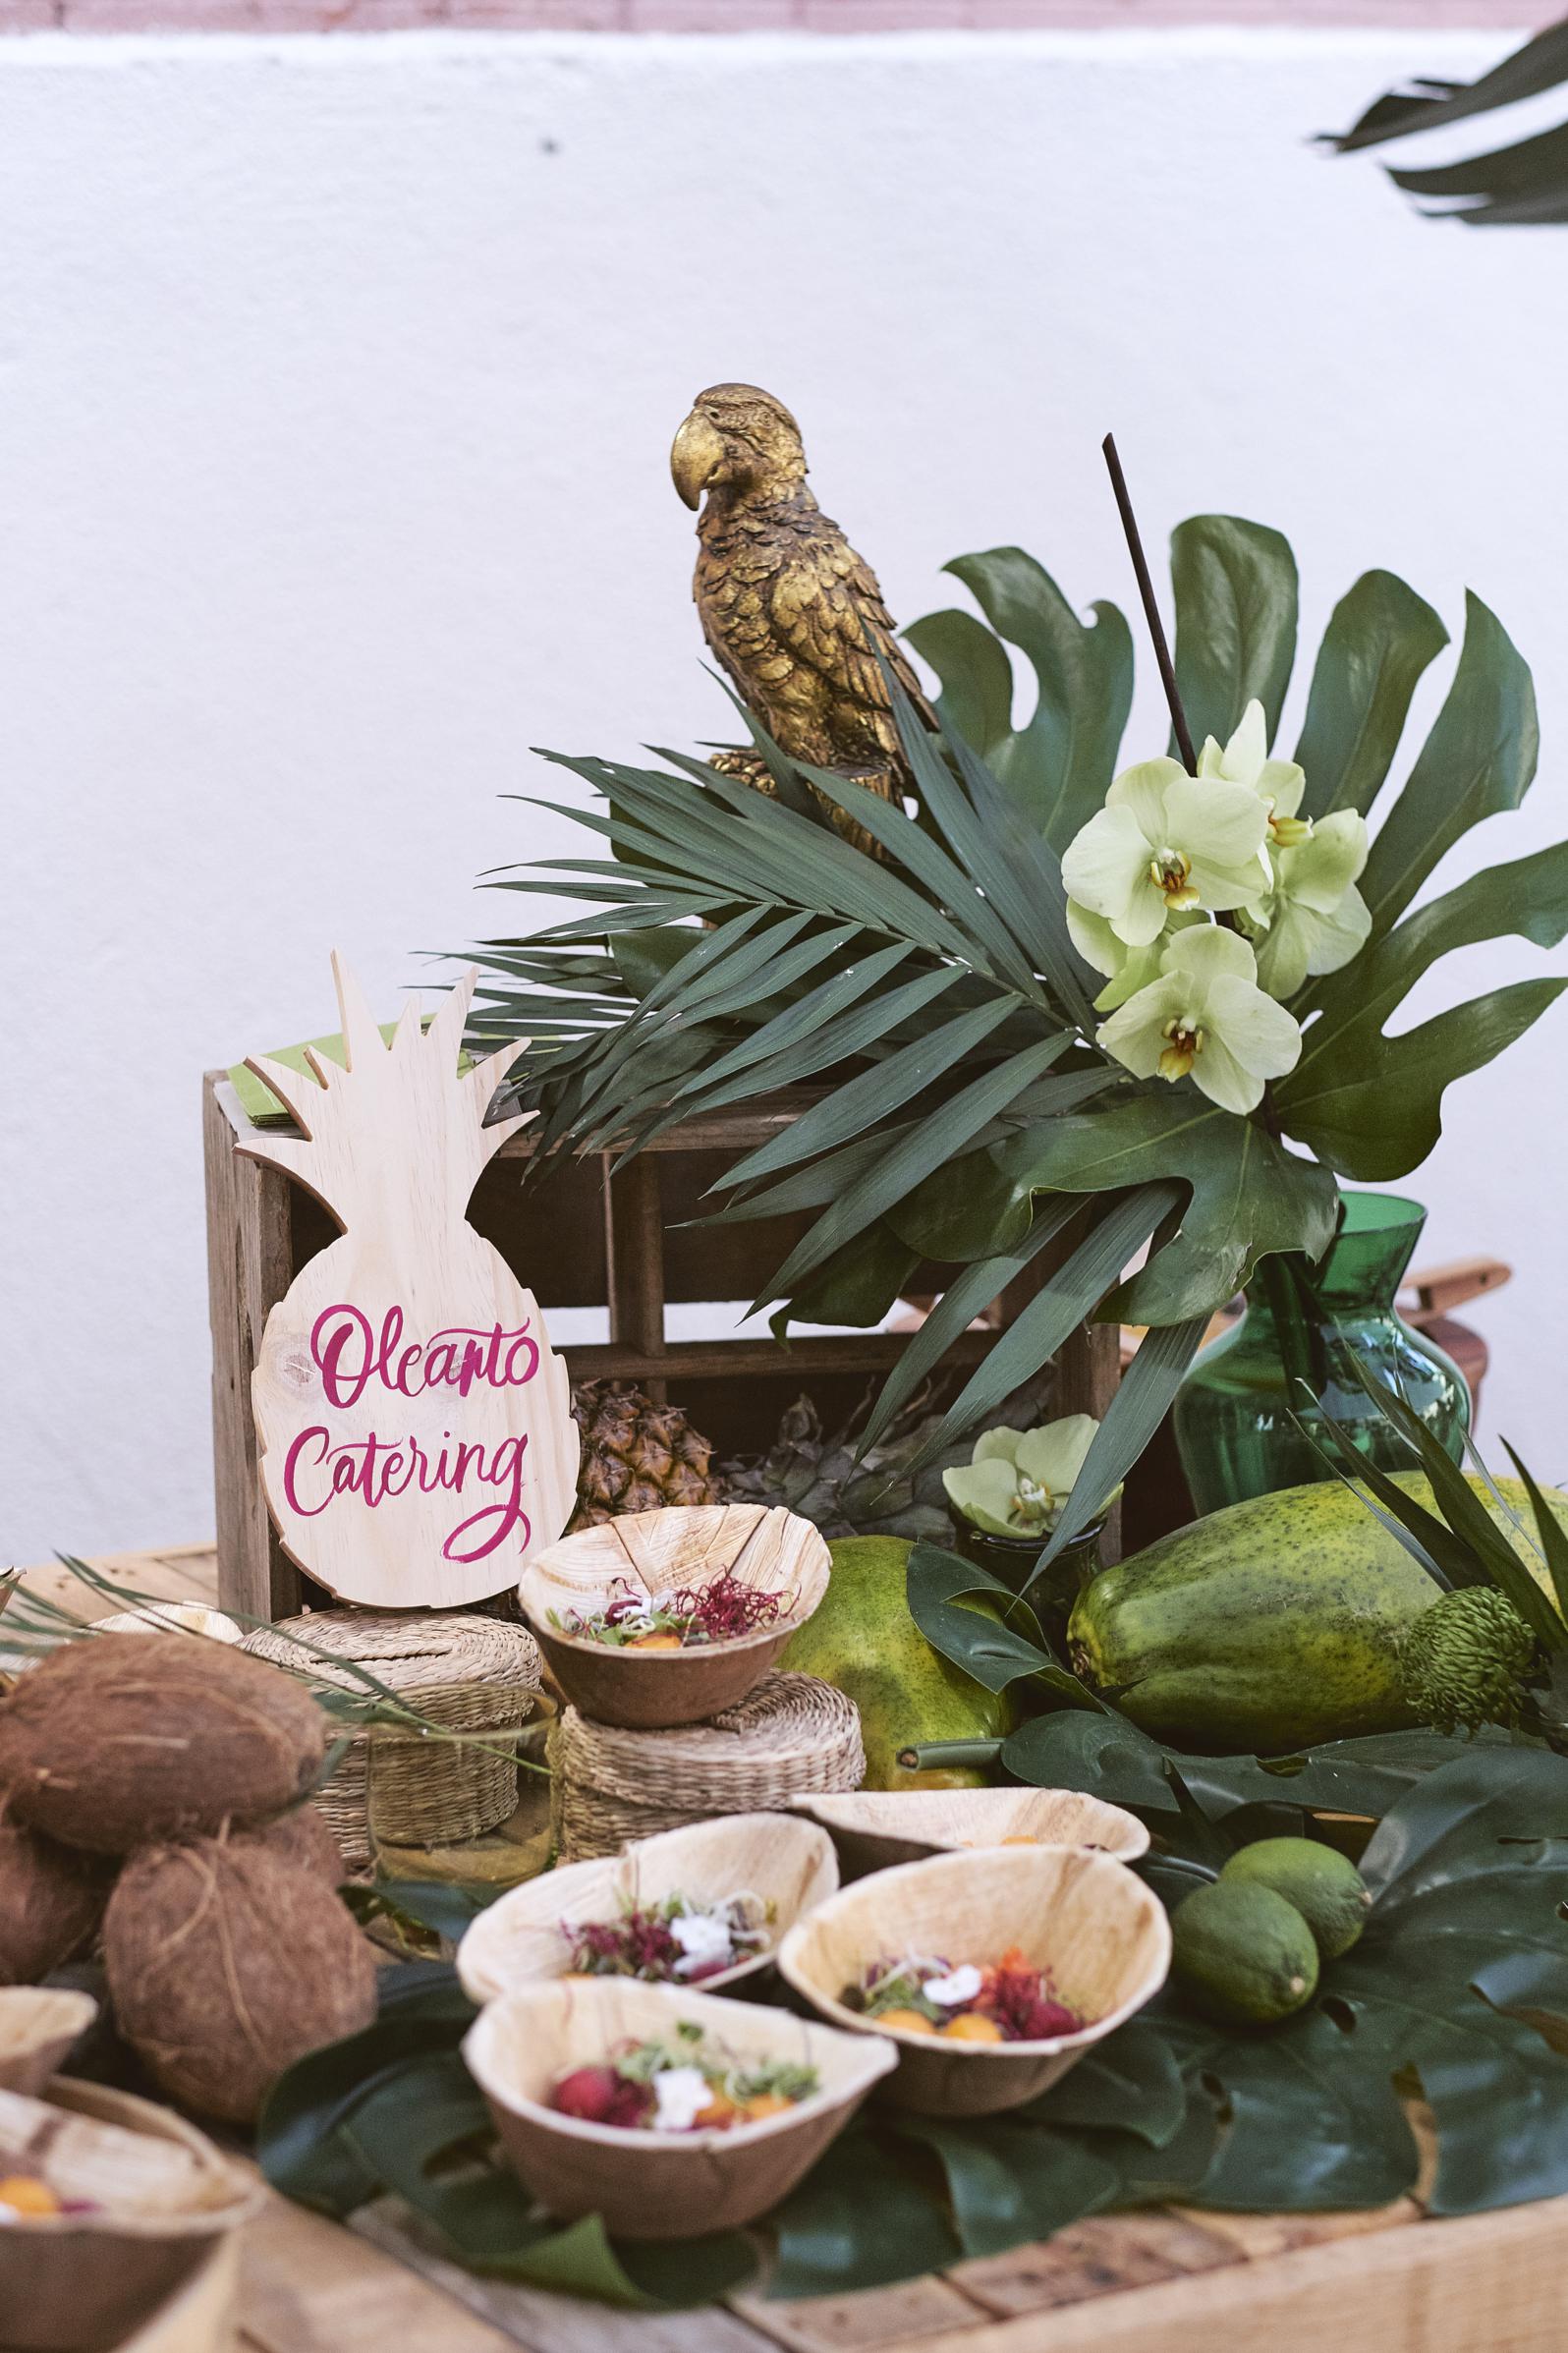 Boda tropical ideas decoracion boda tematica tripical catering boda calista summer party 2018